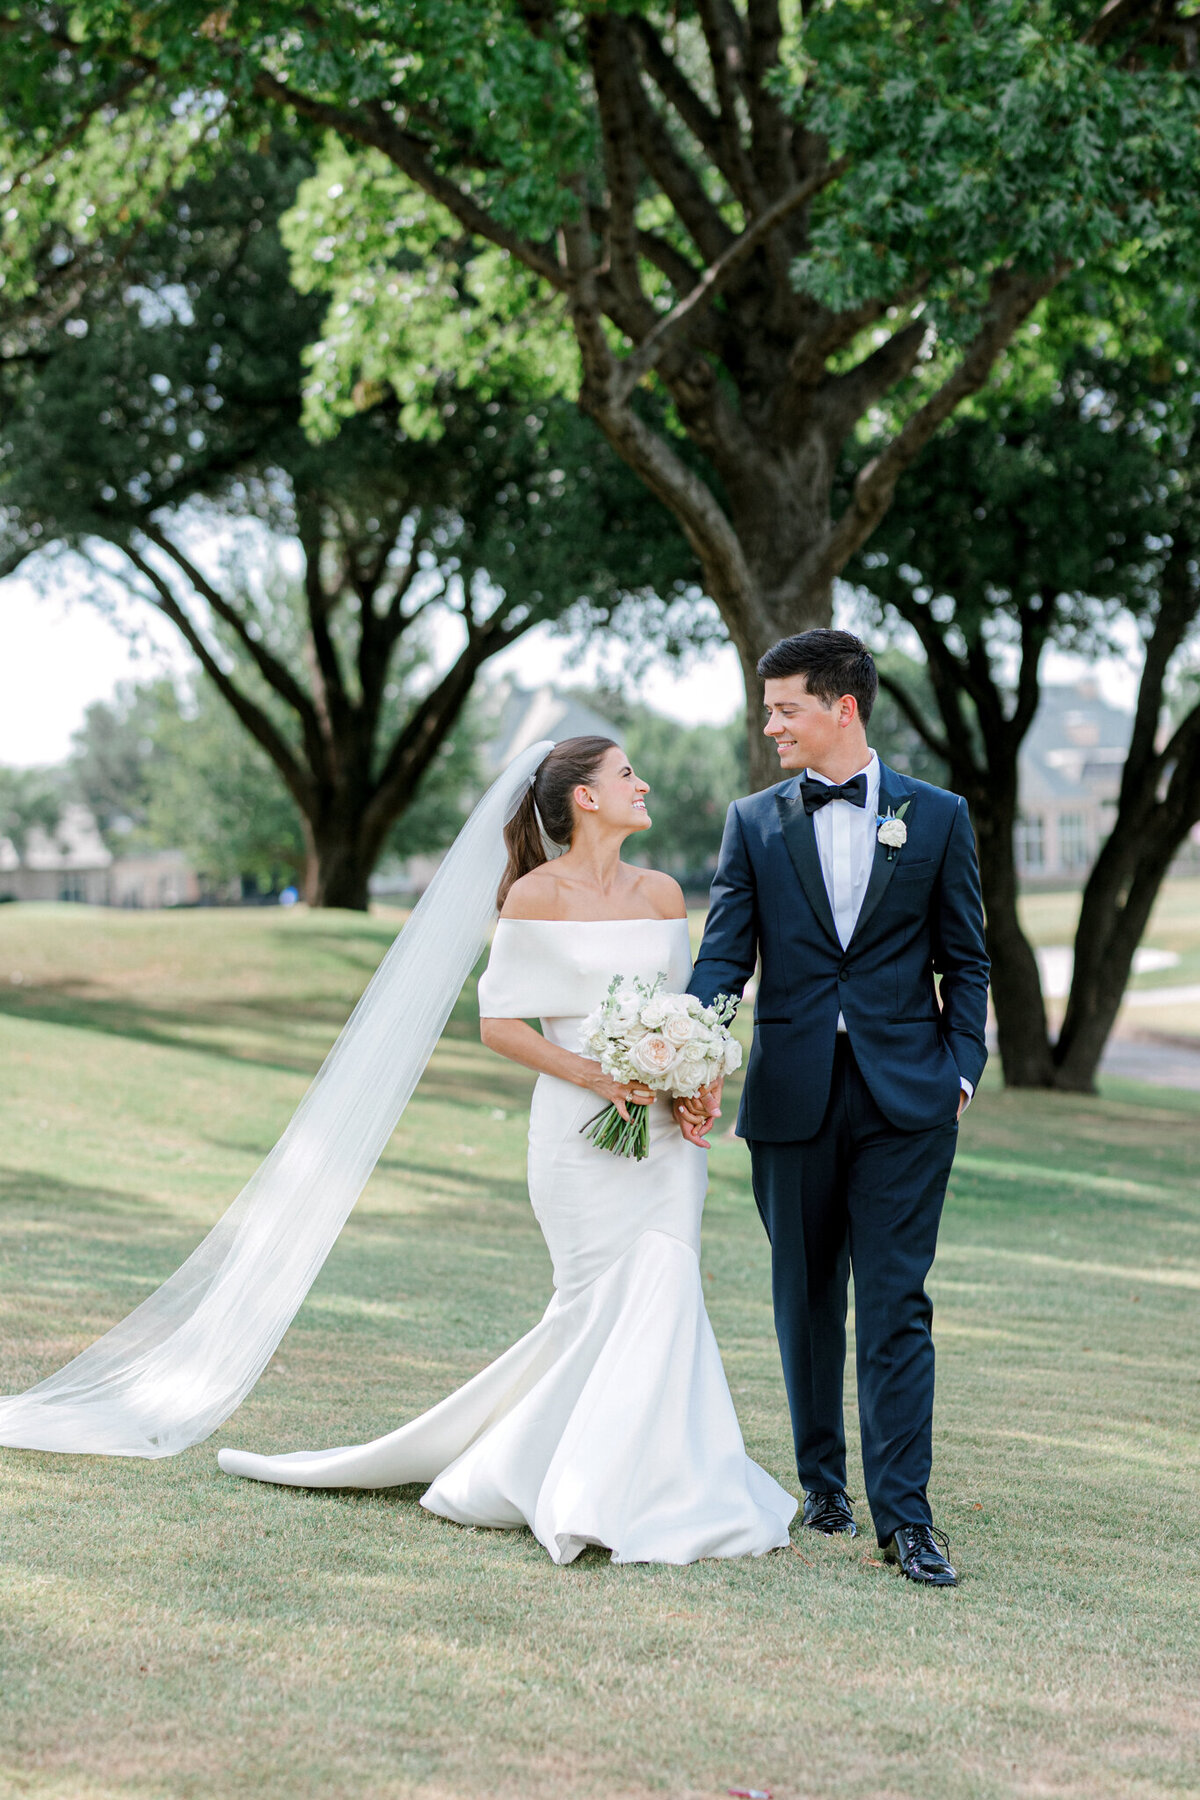 Annie & Logan's Wedding | Dallas Wedding Photographer | Sami Kathryn Photography-176